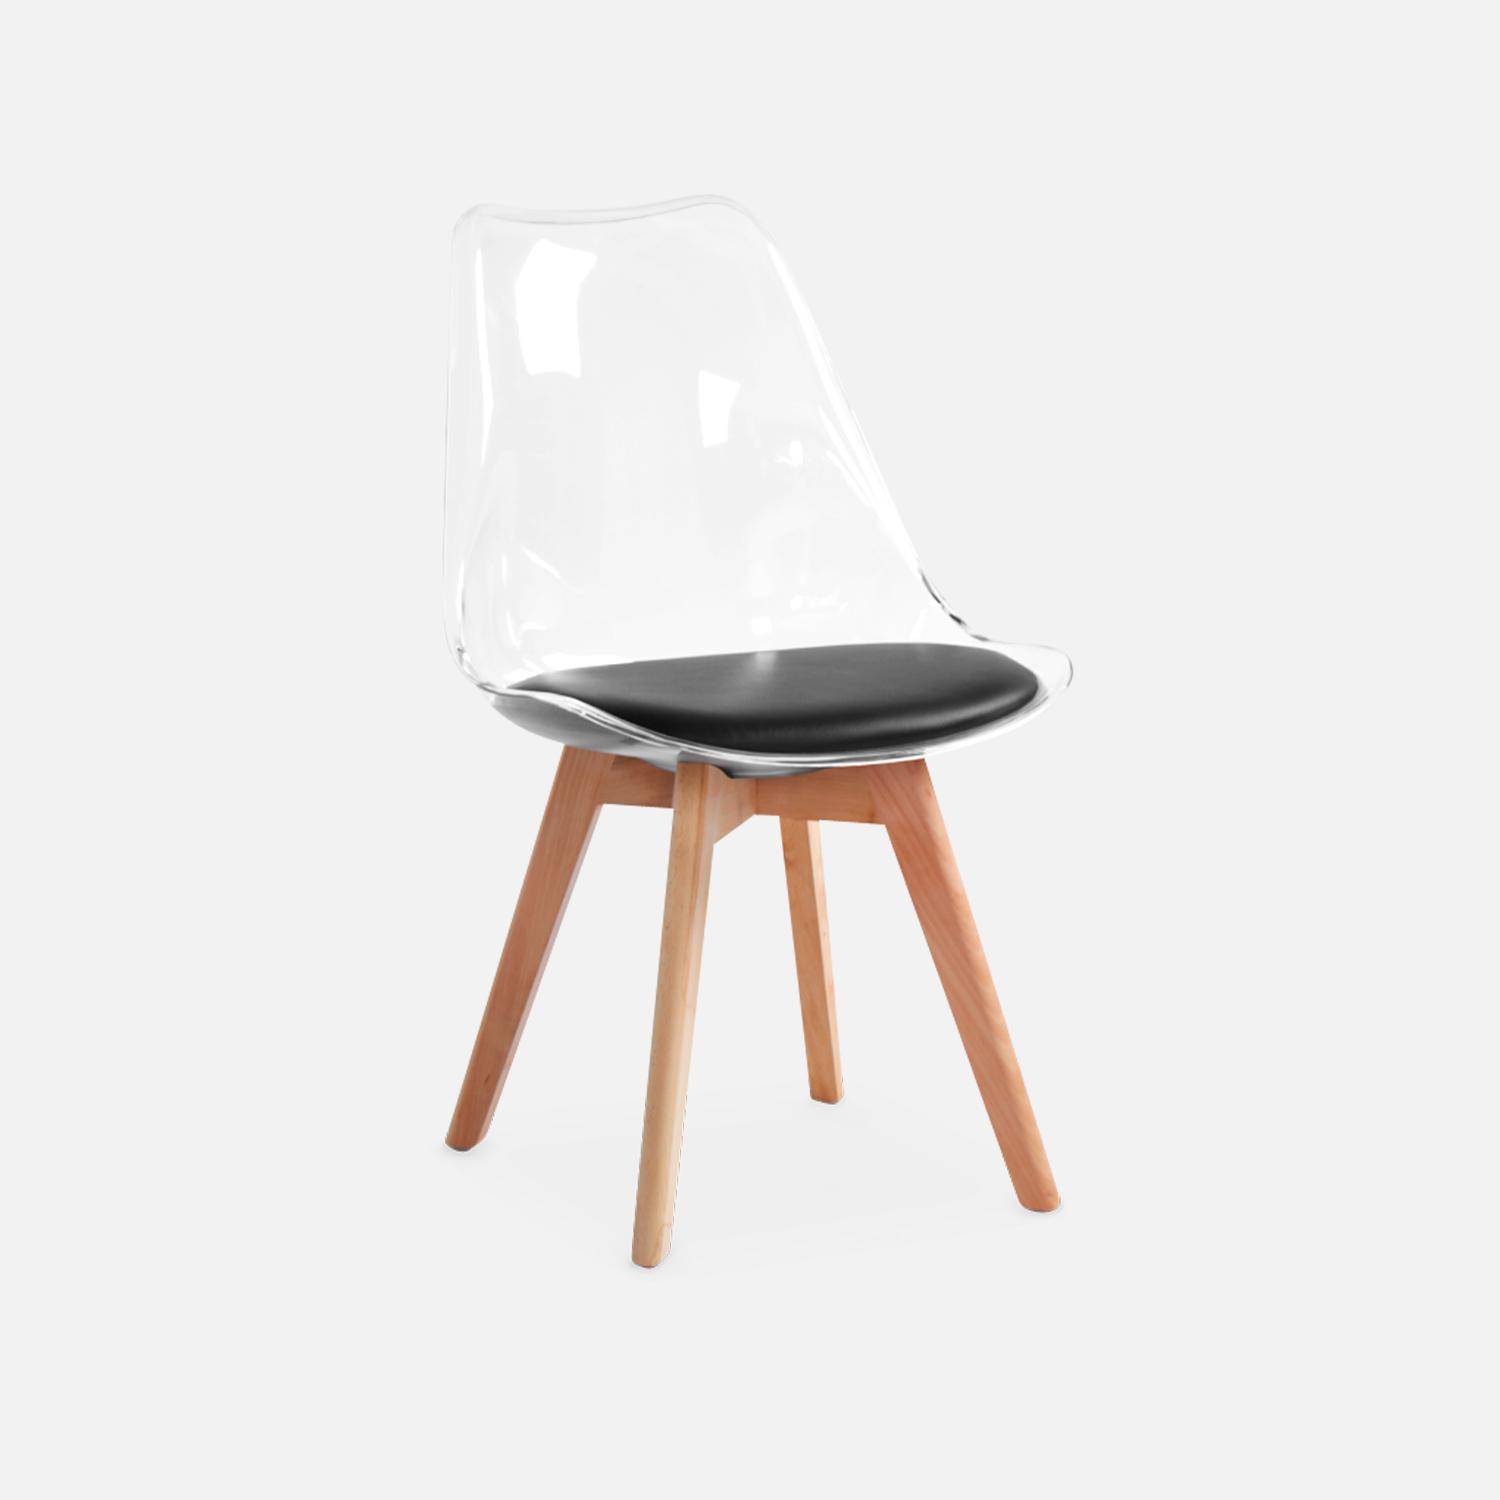 4er Set Stühle im skandinavischen Stil - Lagertha - Holzbeine, Ein Sitz, schwarzes Kissen, transparente Sitzschale,sweeek,Photo6